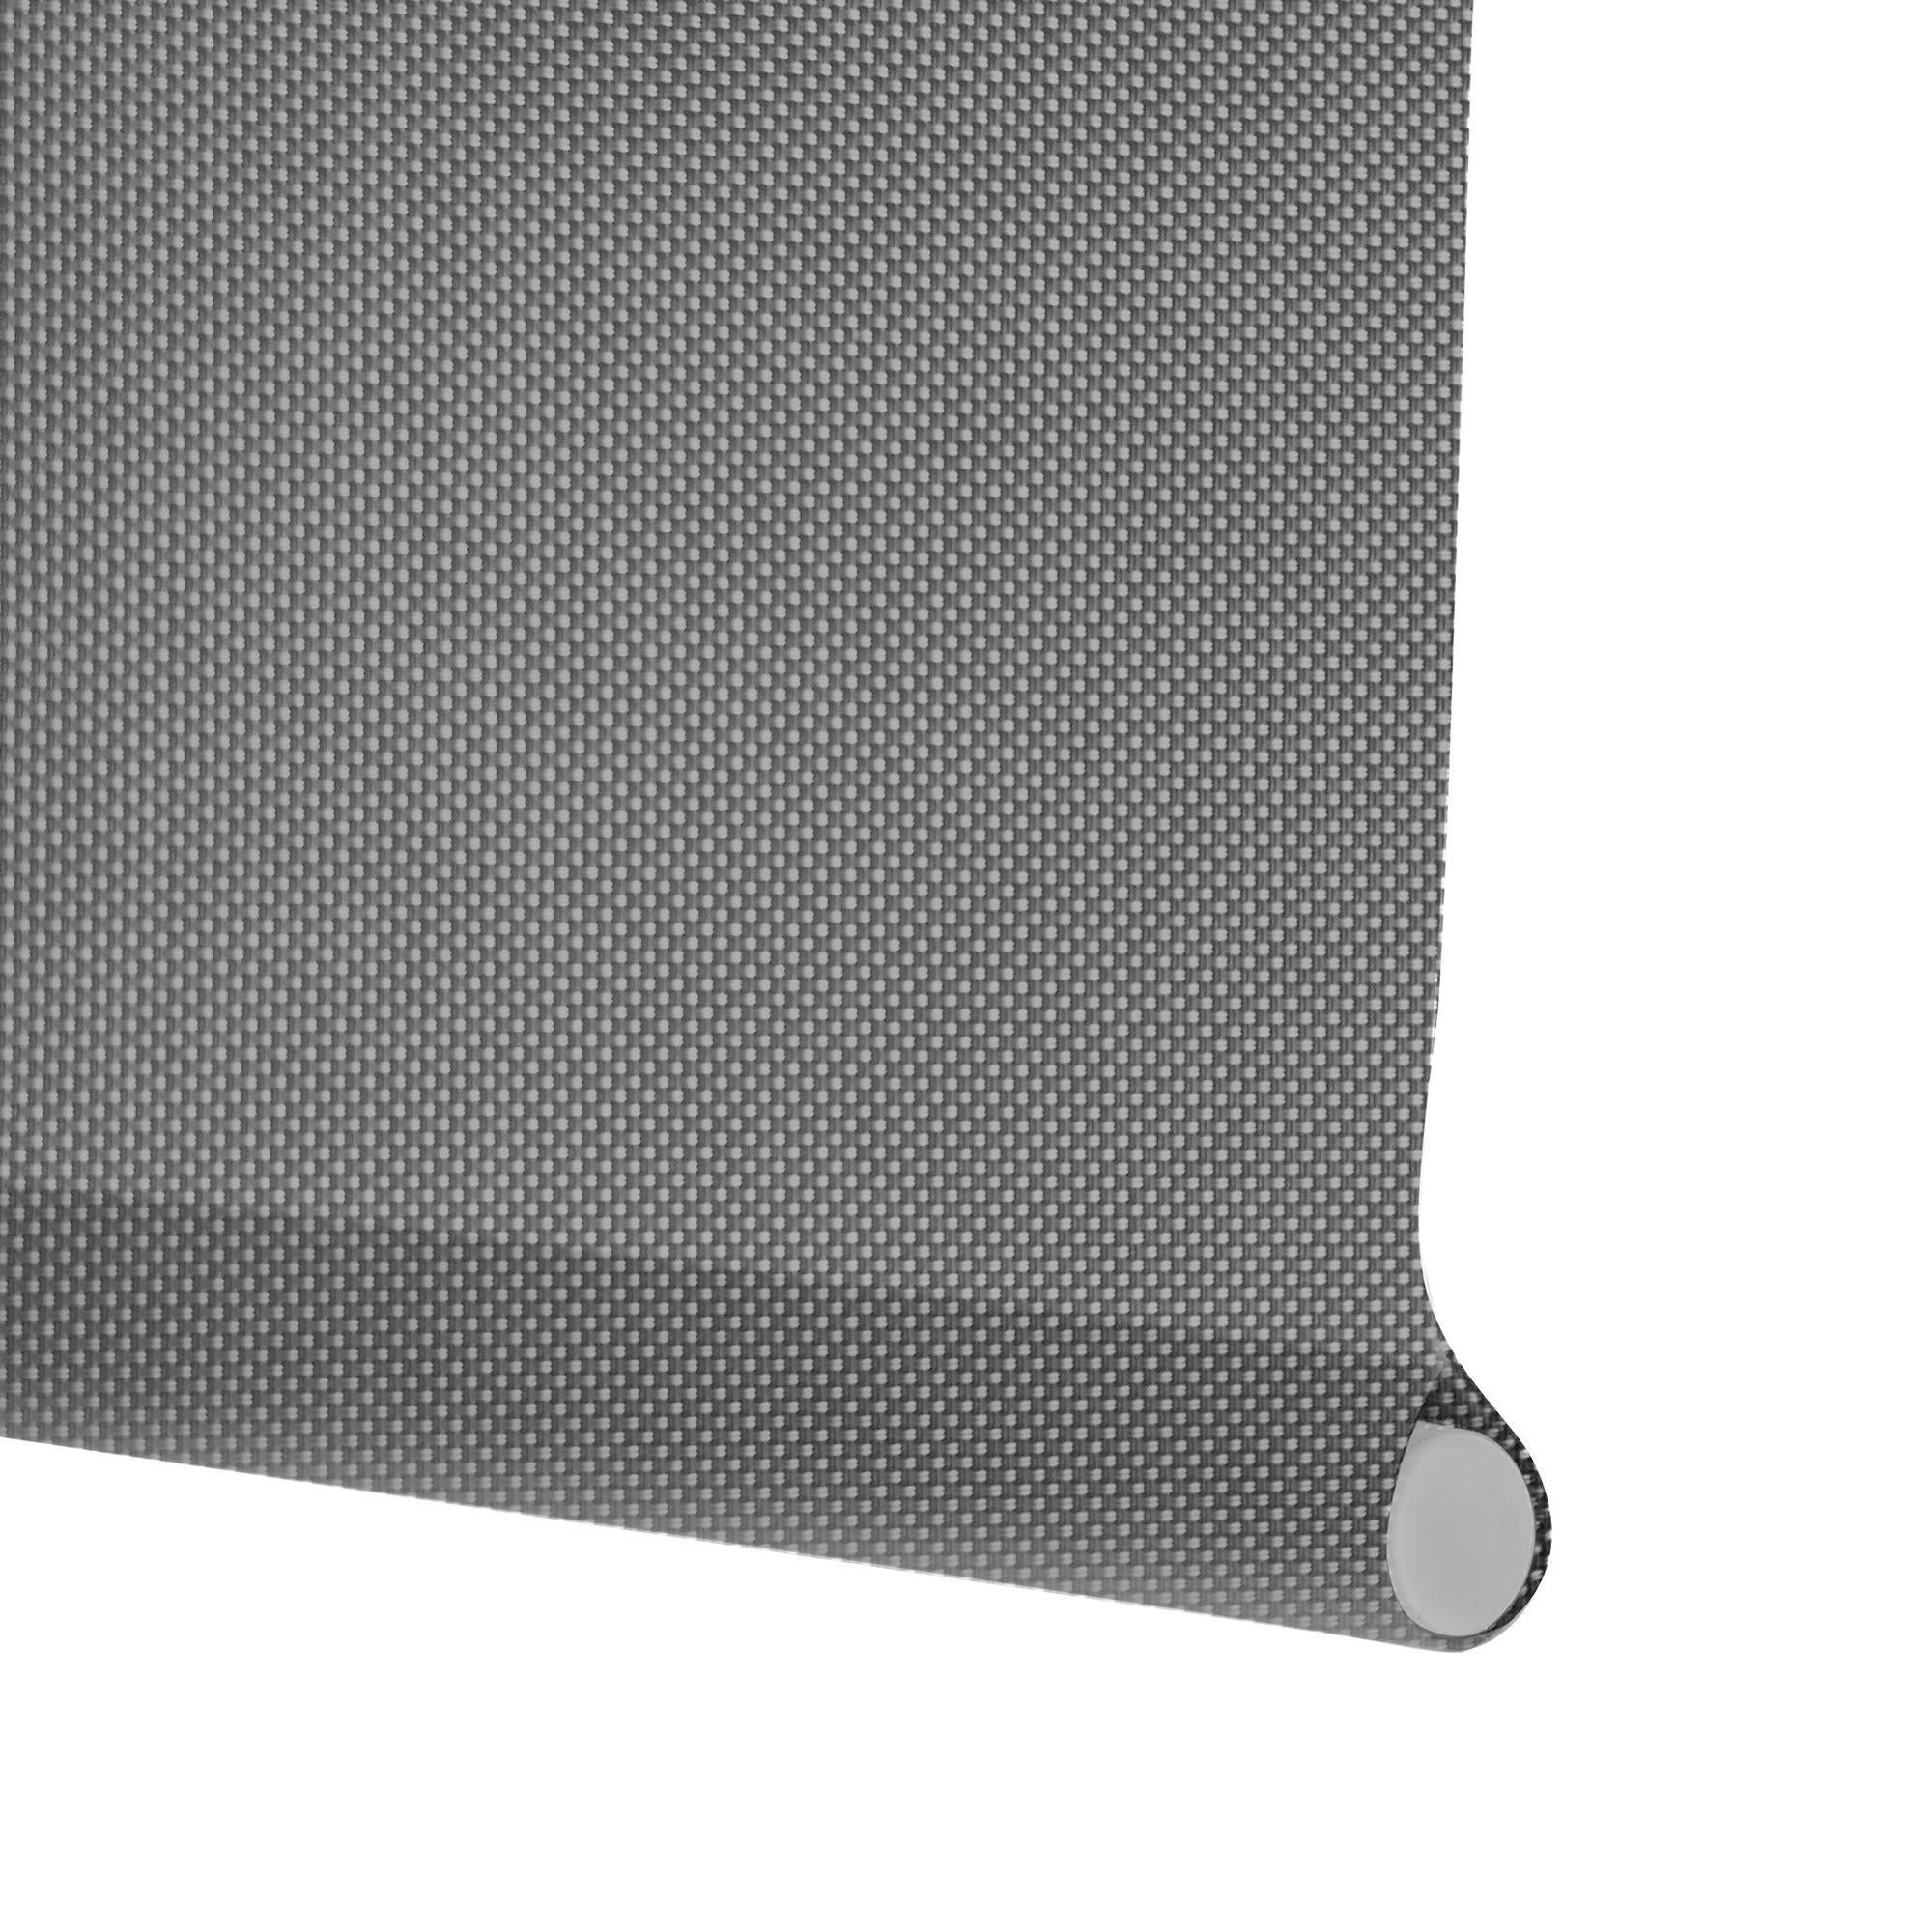 Tenda a rullo filtrante INSPIRE Screen grigio perla 220 x 250 cm - 2